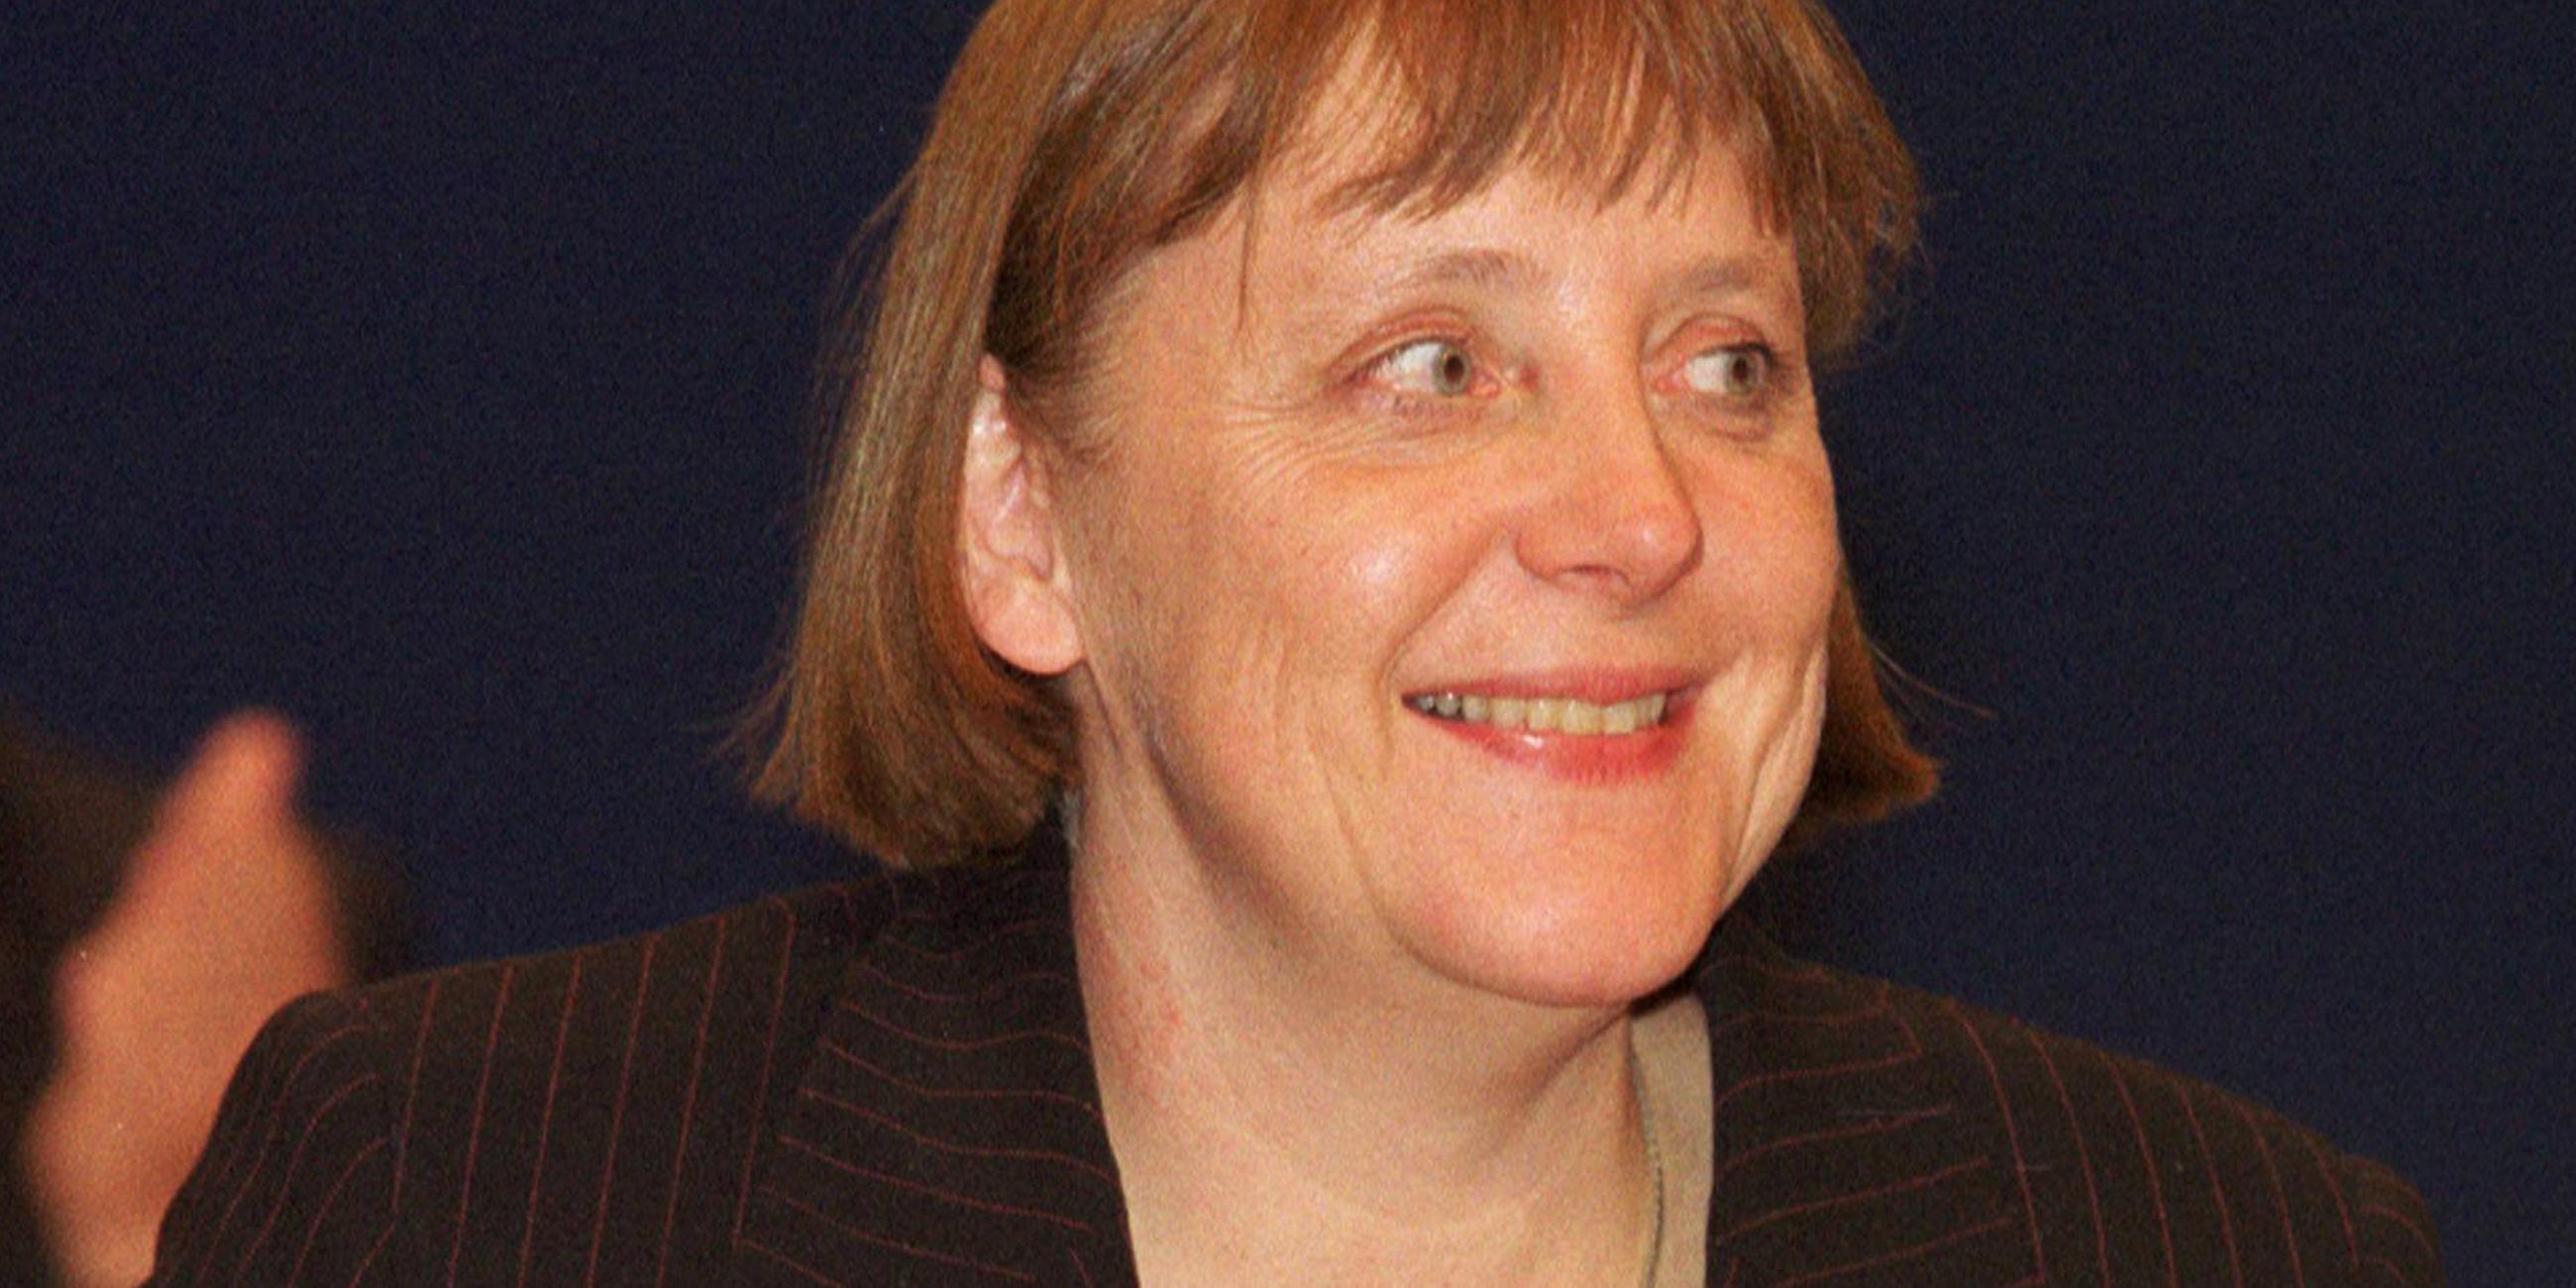 Archiv: Angela Merkel am 10.04.2000 in Essen